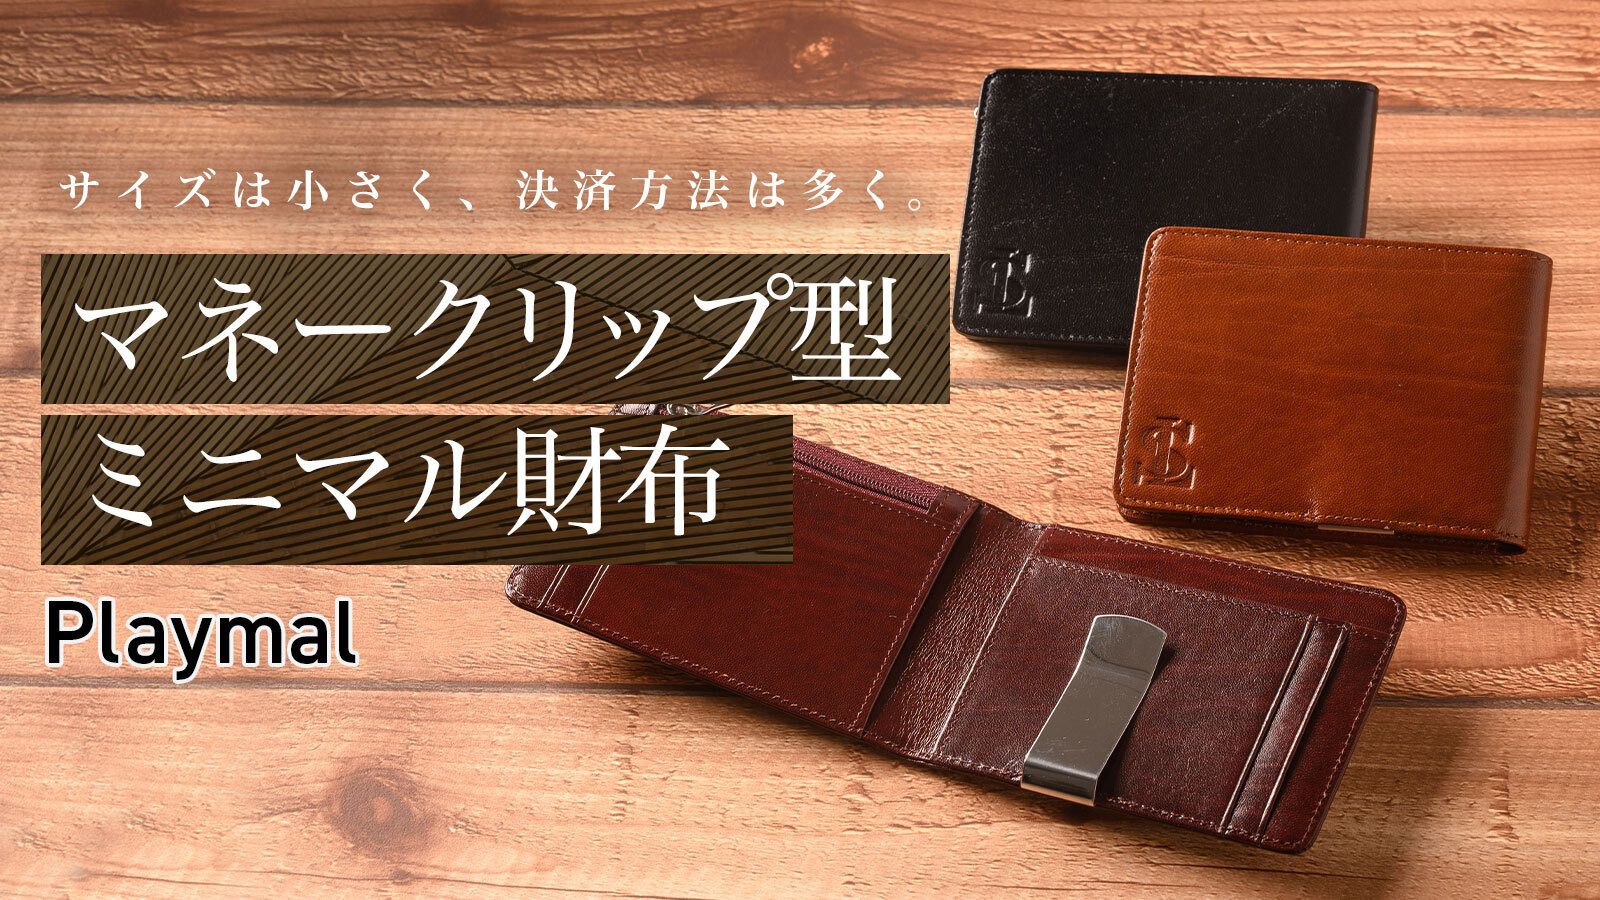 ミニマル設計のマネークリップ型財布】コイン・札・カードどれでも